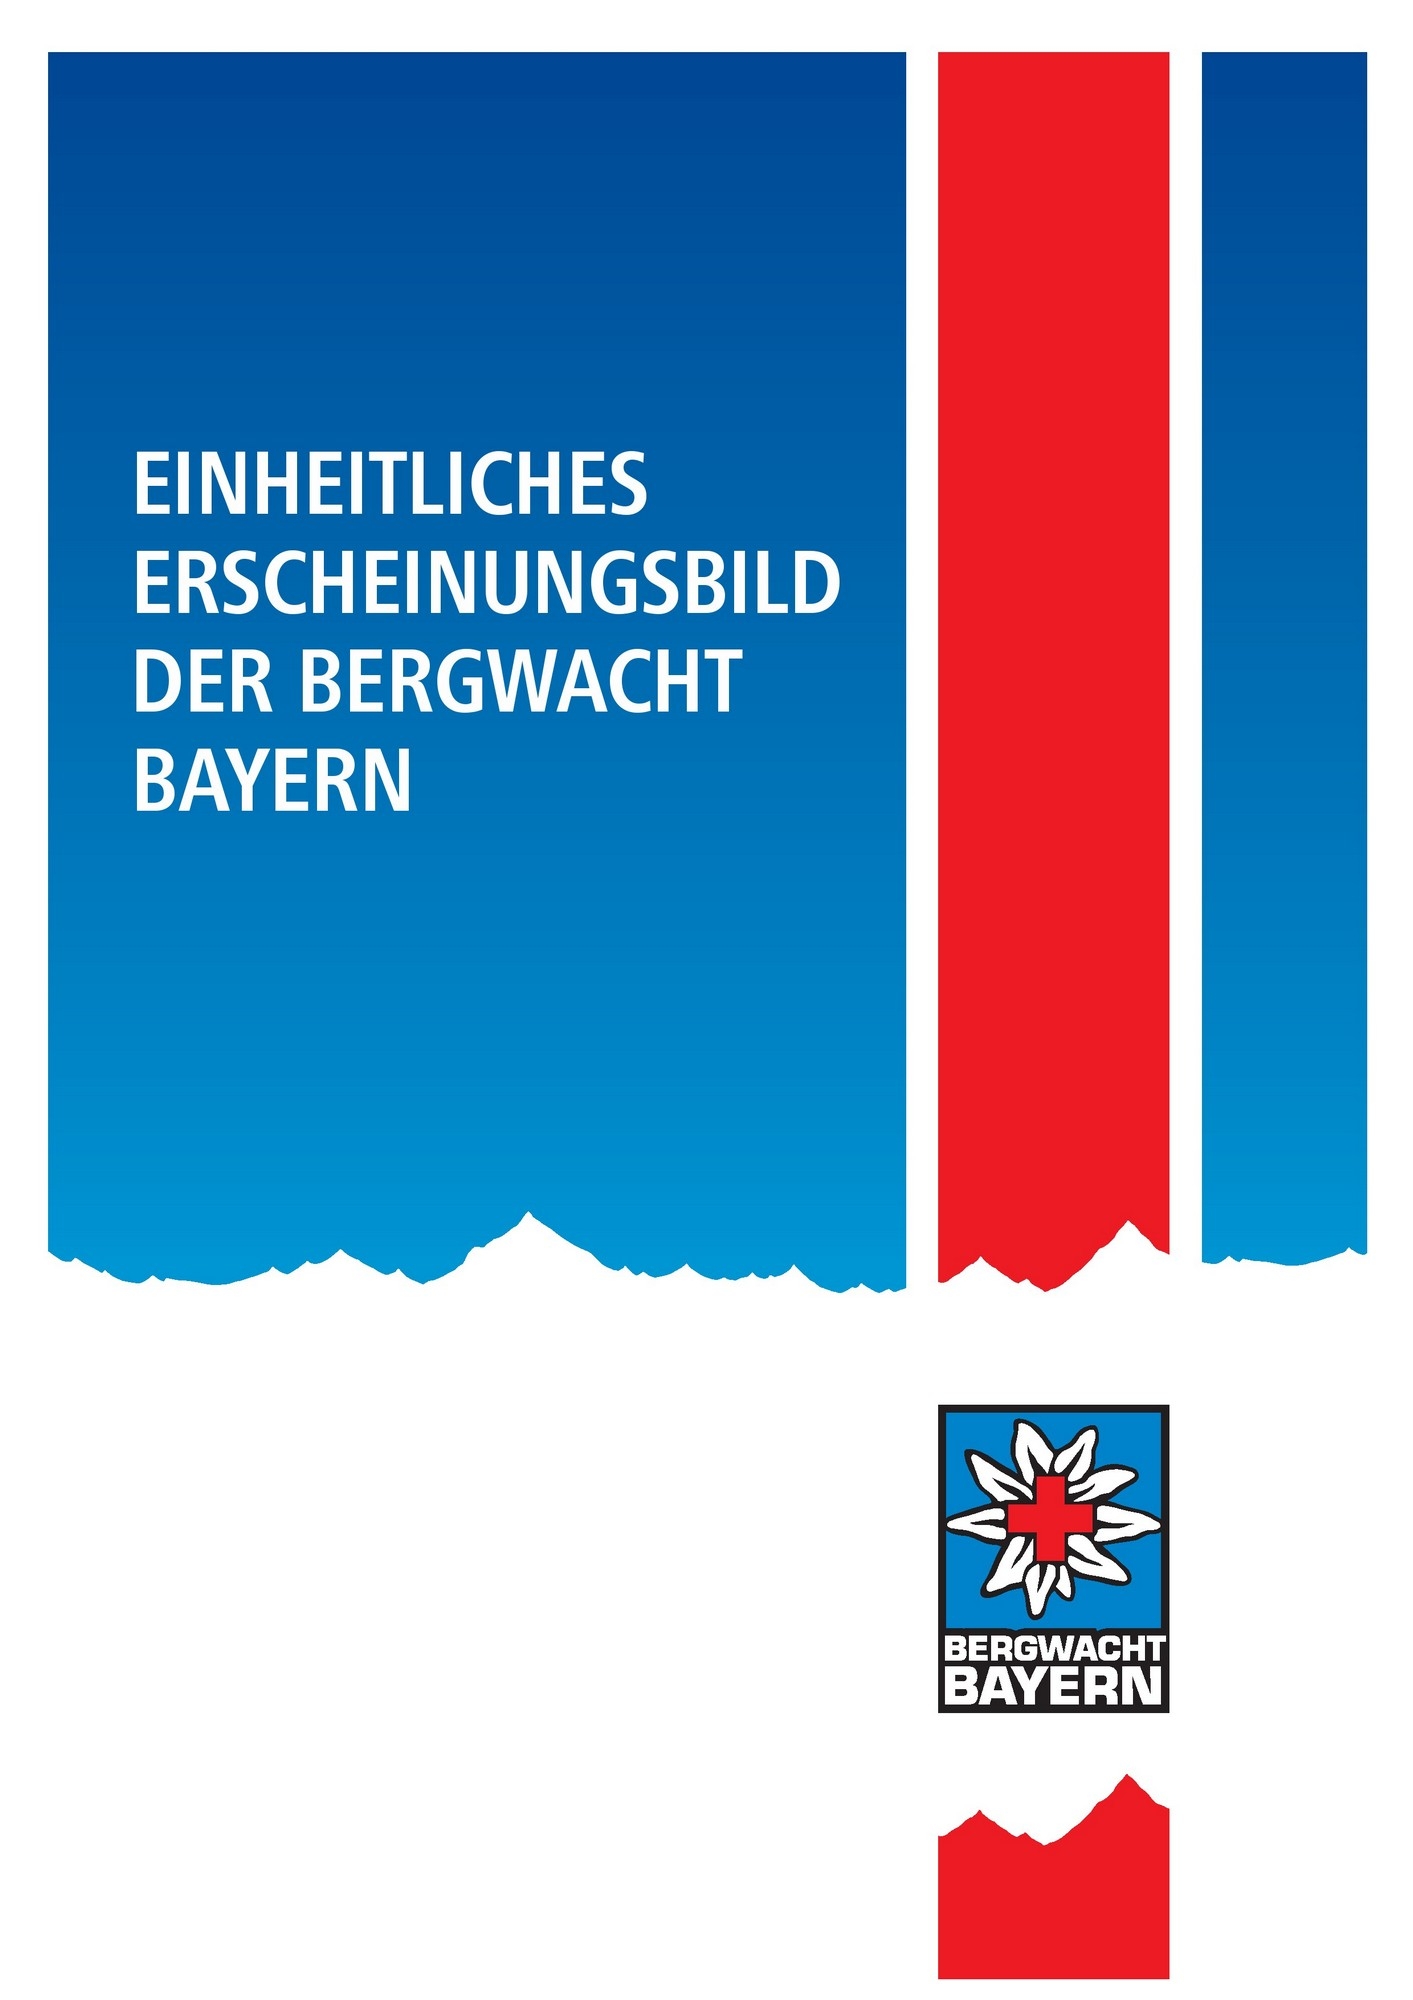 Einheitliches Erscheinungsbild Der Bergwacht Bayern Brand Guide